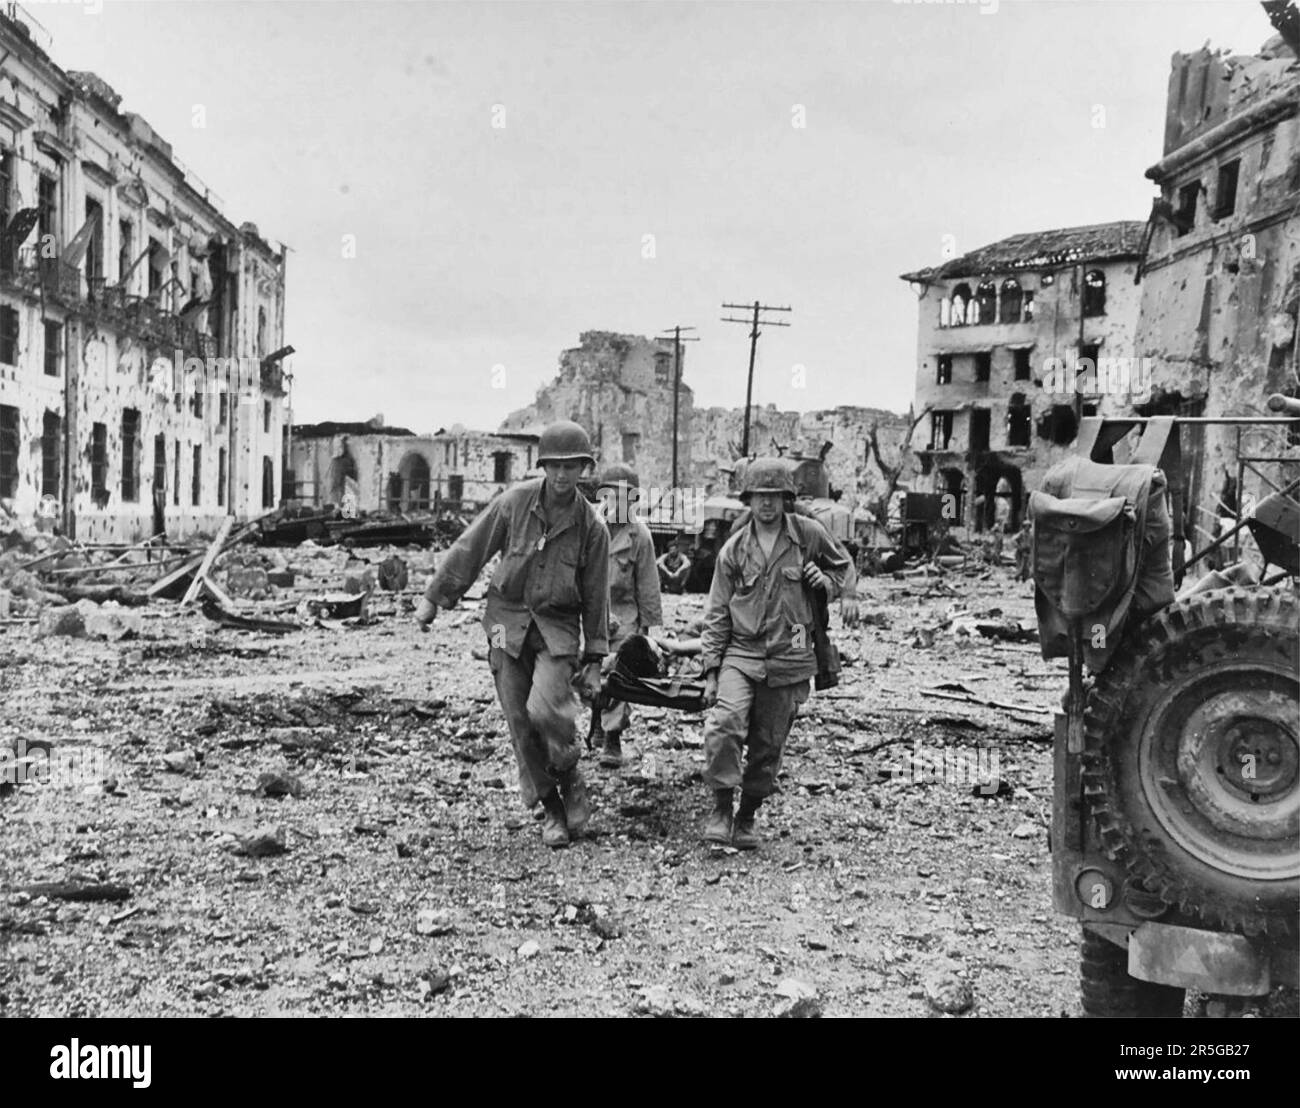 Die Trage-Party bringt einen verwundeten US-Soldaten nach einem Angriff von US-Truppen zur Befreiung philippinischer Gefangener in der ummauerten Stadt am 23. Februar 1945 heraus. Beachten Sie zerstörte Gebäude. Stockfoto